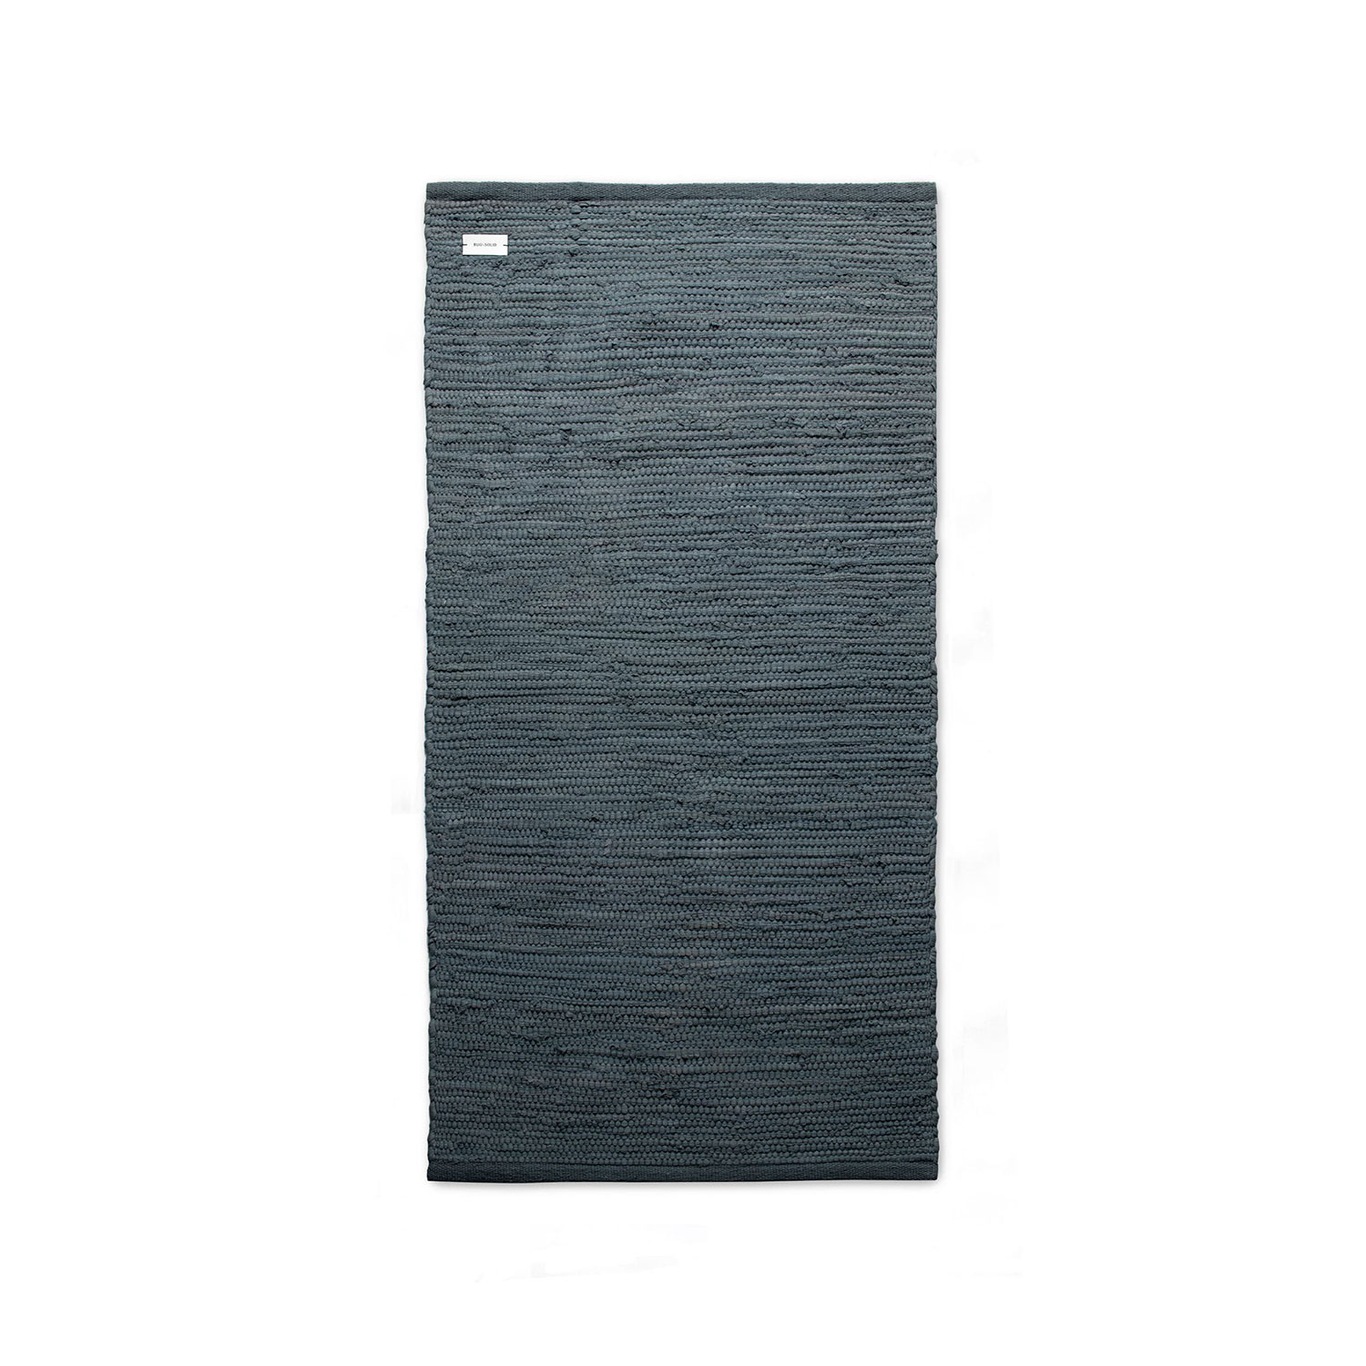 Cotton Matto Steel Grey, 60x90 cm